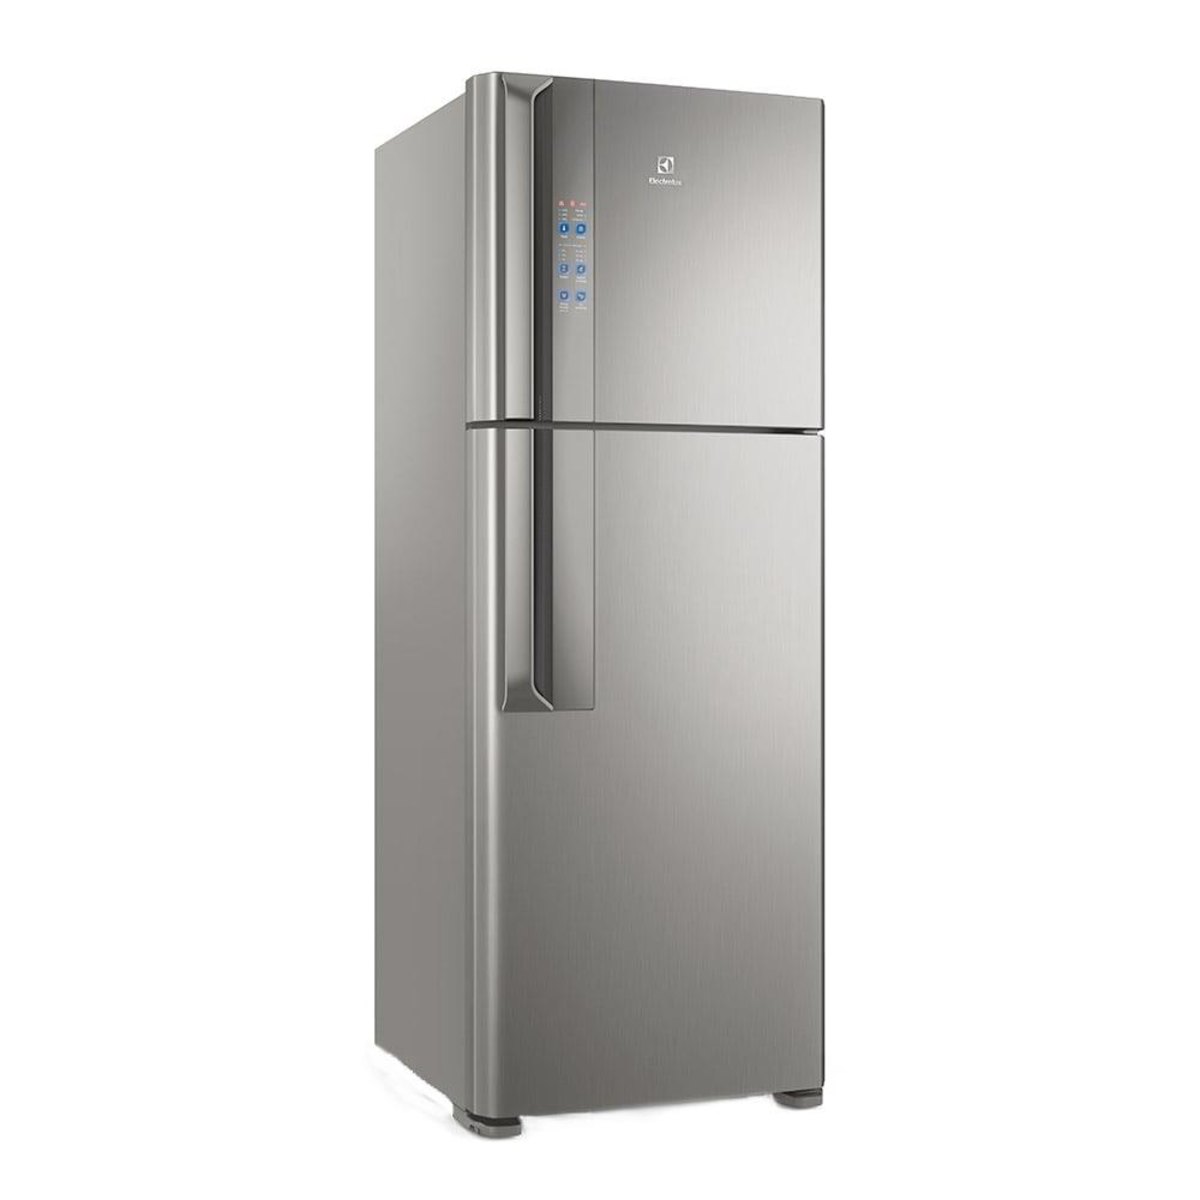 Geladeira/Refrigerador Electrolux Frost Free 2 Portas Top Freezer Df56s 474 Litros Platinum - 110V